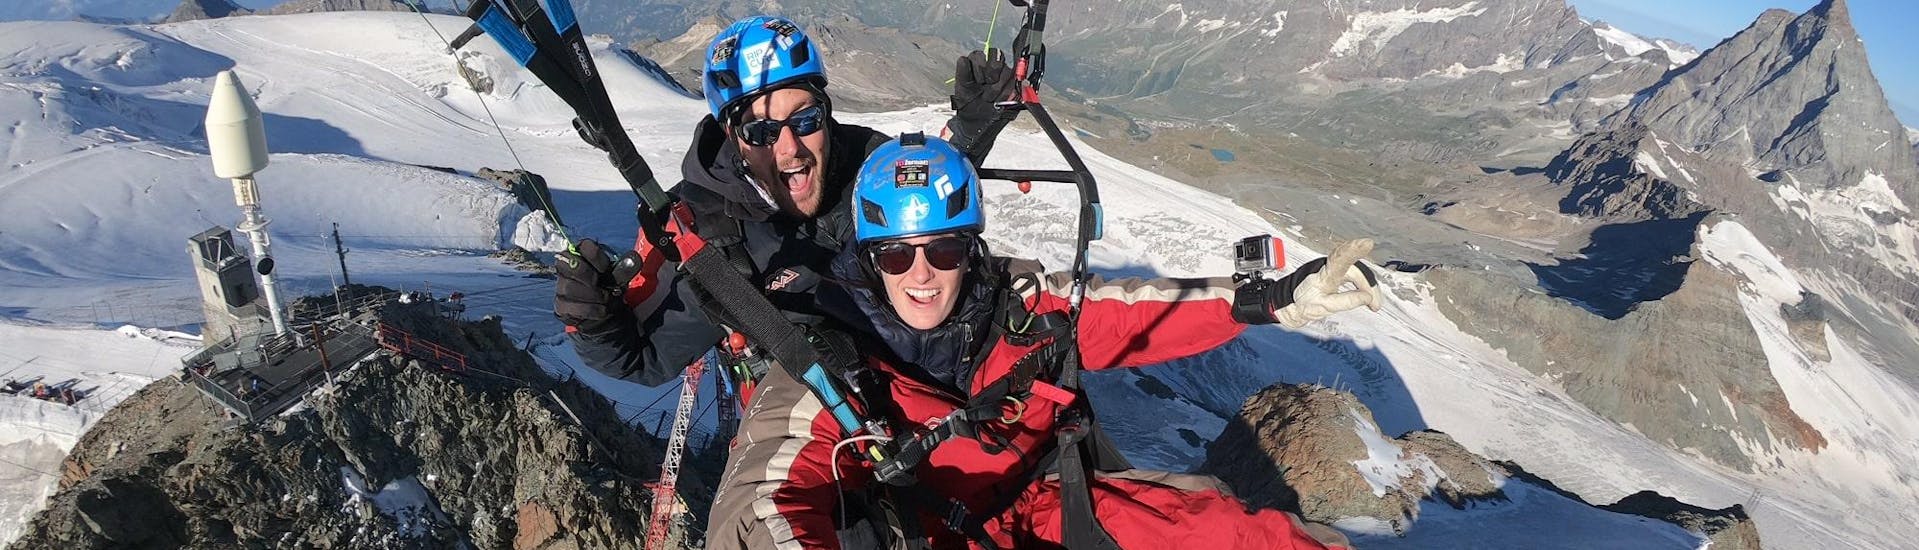 Une équipe de Matterhorn Paragliding survole les glaciers près de Zermatt.